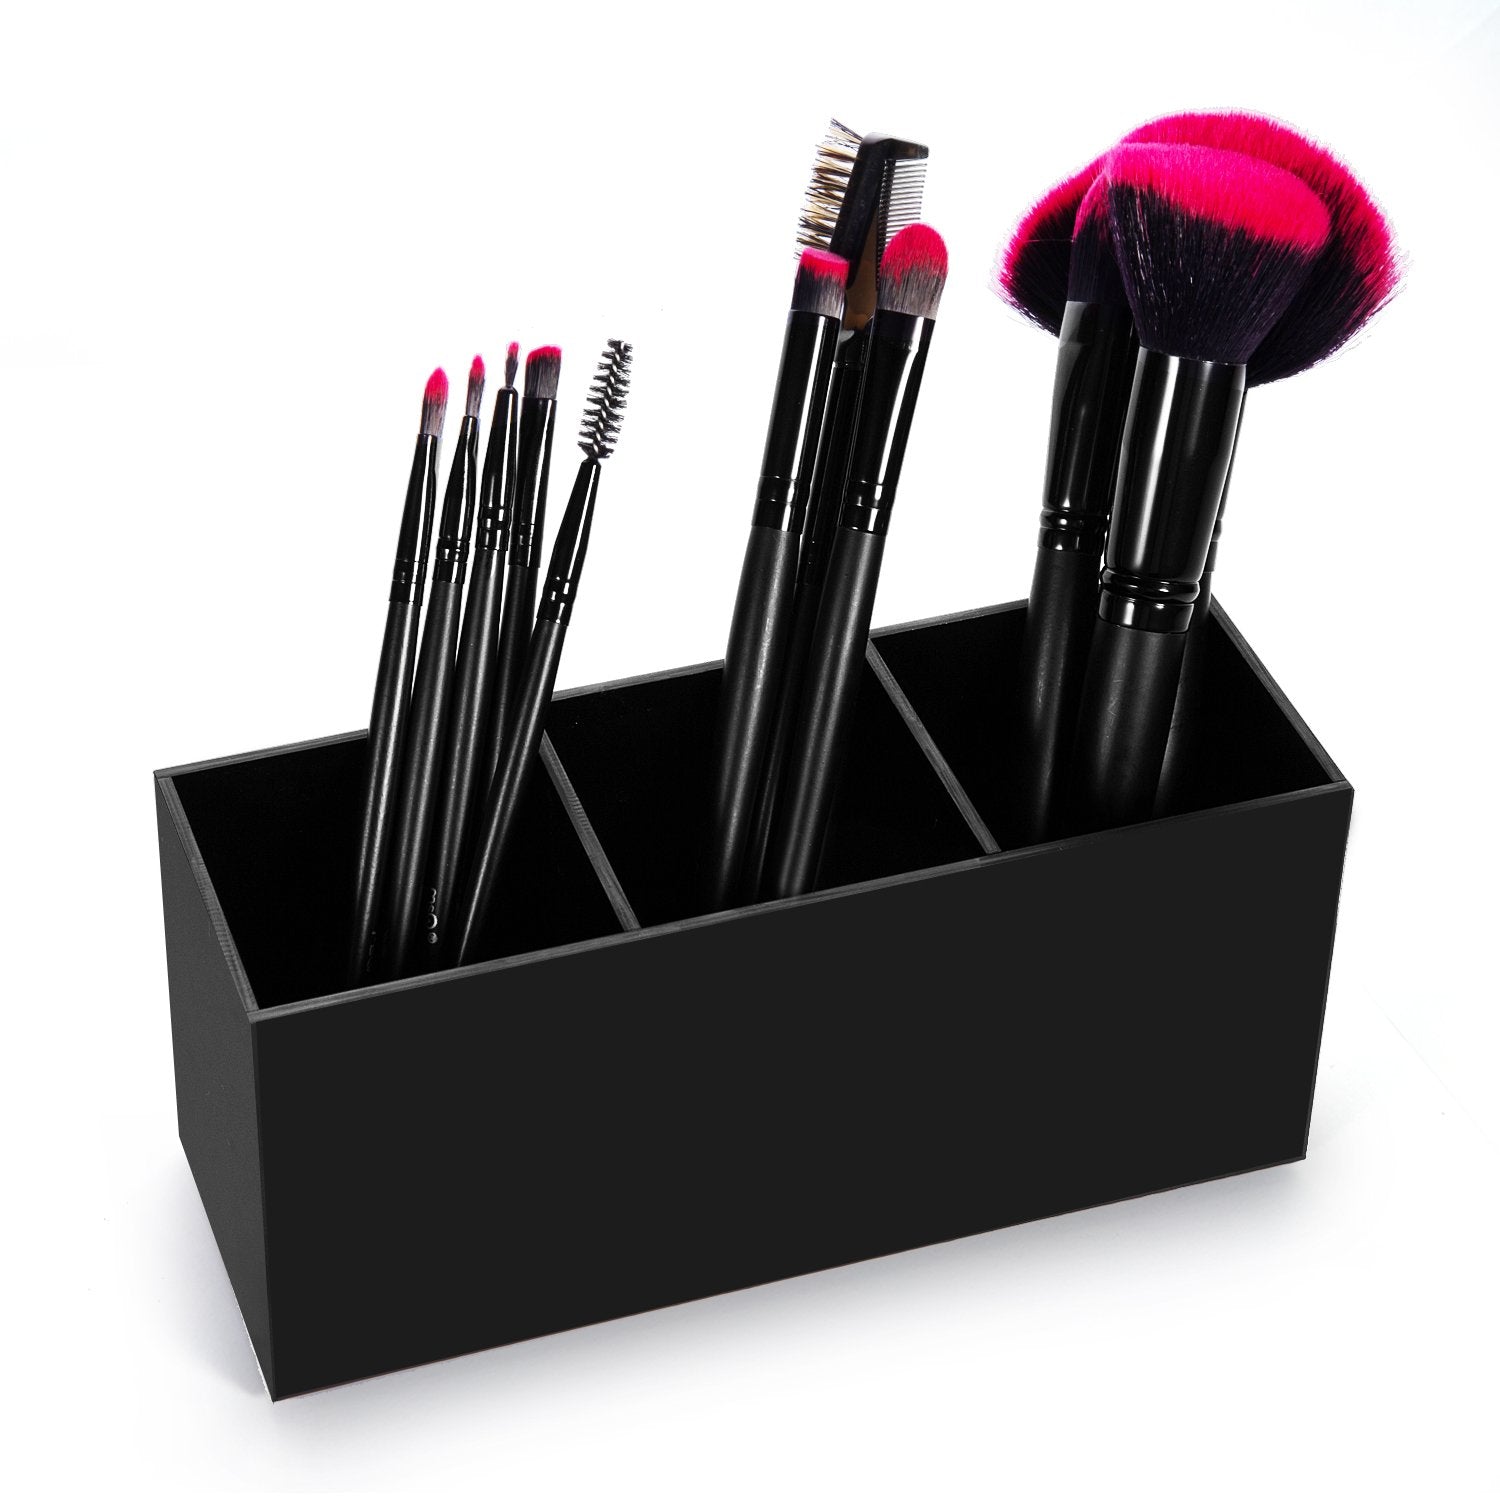 HBlife Makeup Brush Holder Organizer, 3 Slot Acrylic Cosmetics Brushes Storage Solution